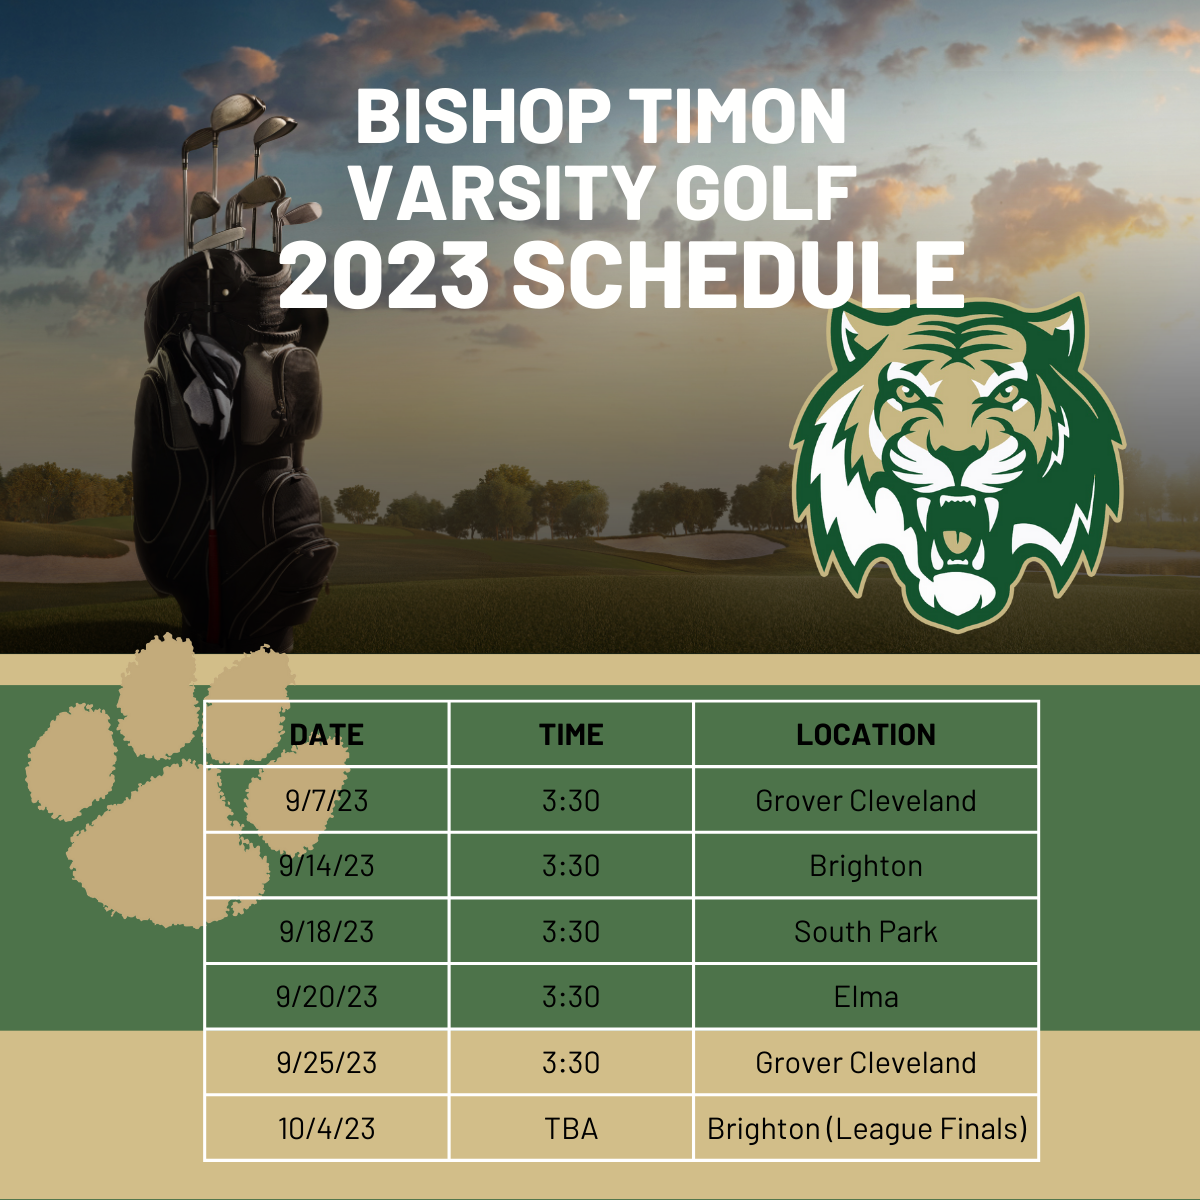 Varsity Golf Schedule - Bishop Timon 